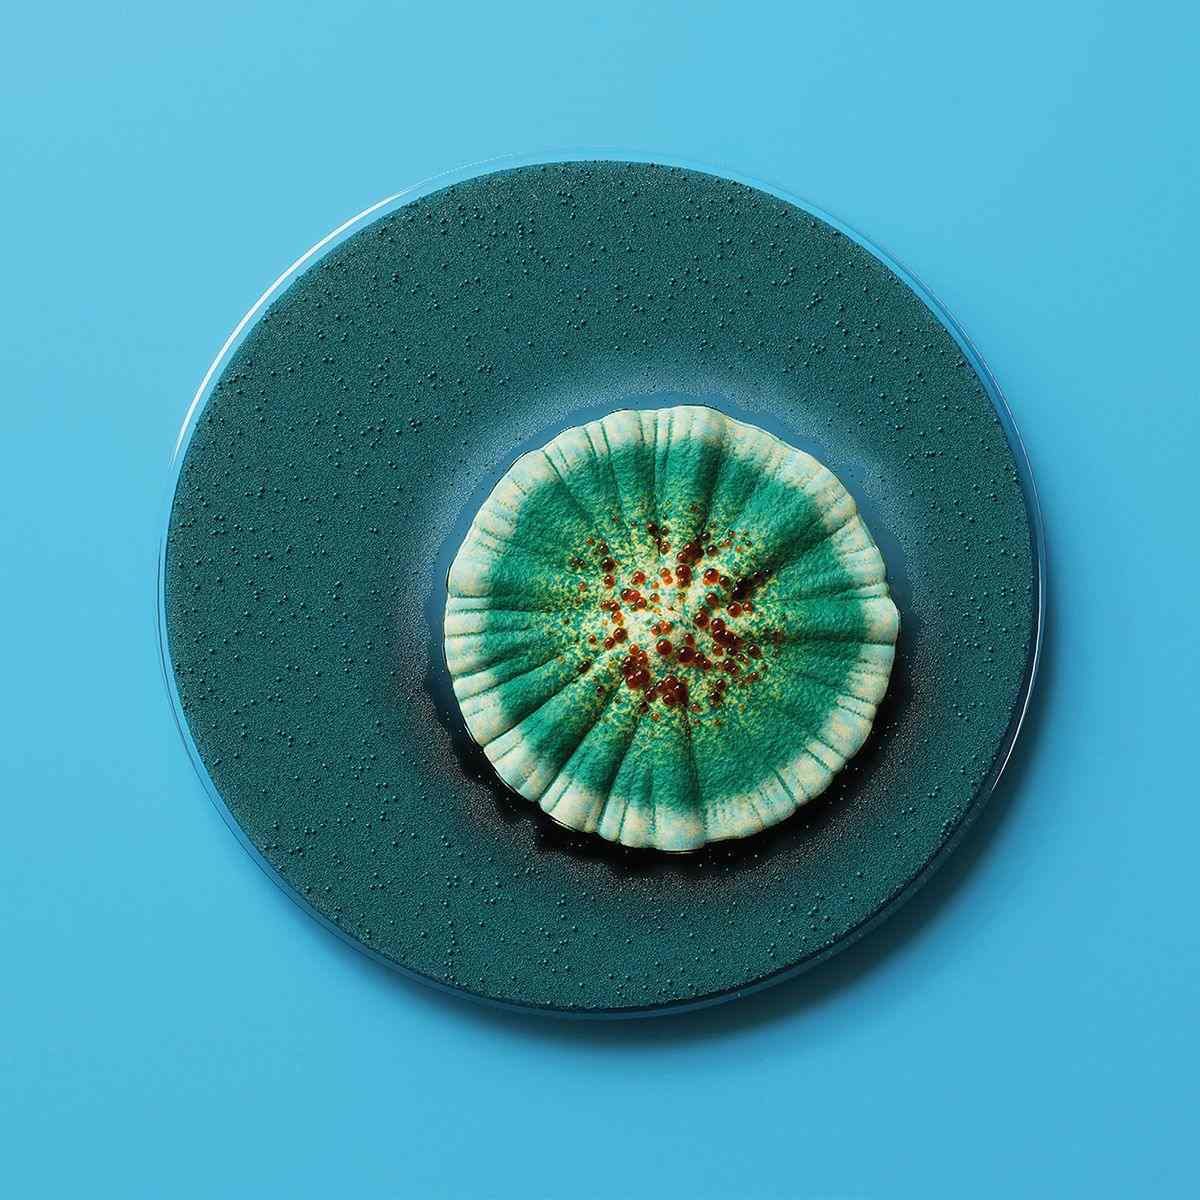 Petri dish of penicillin 